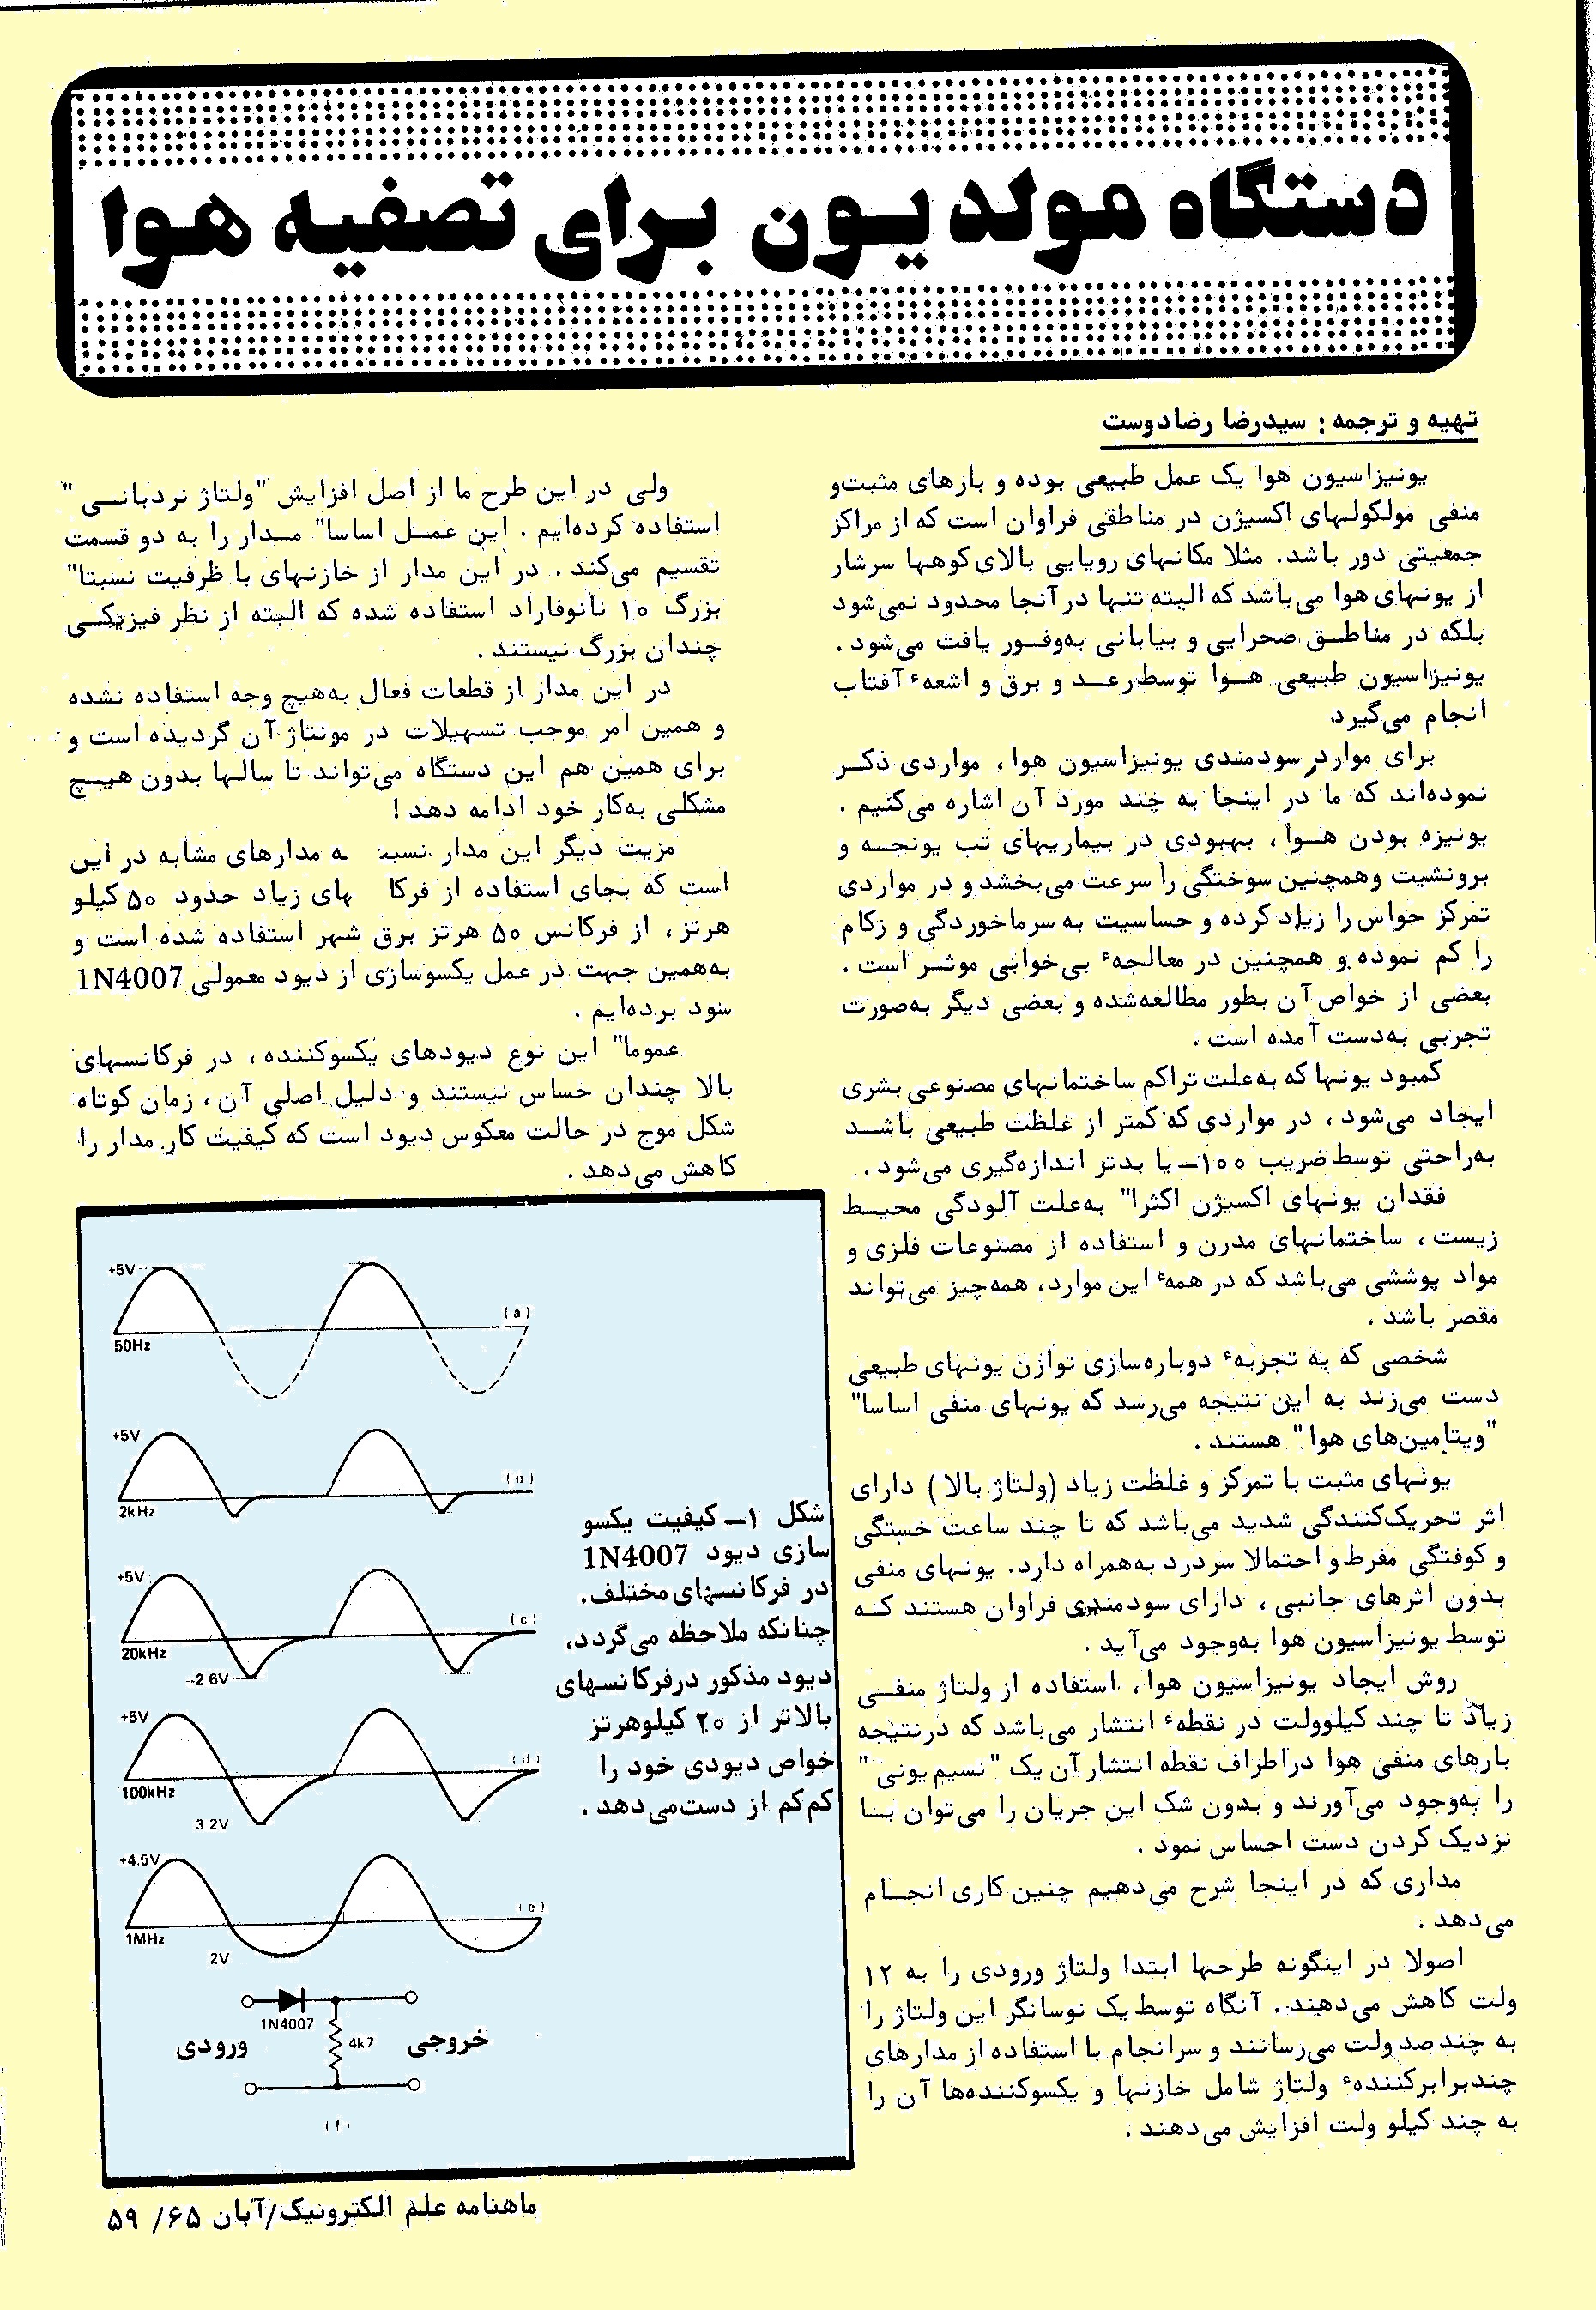 صفحه اول مقاله مولد یون در نشریه علم الکترونیک